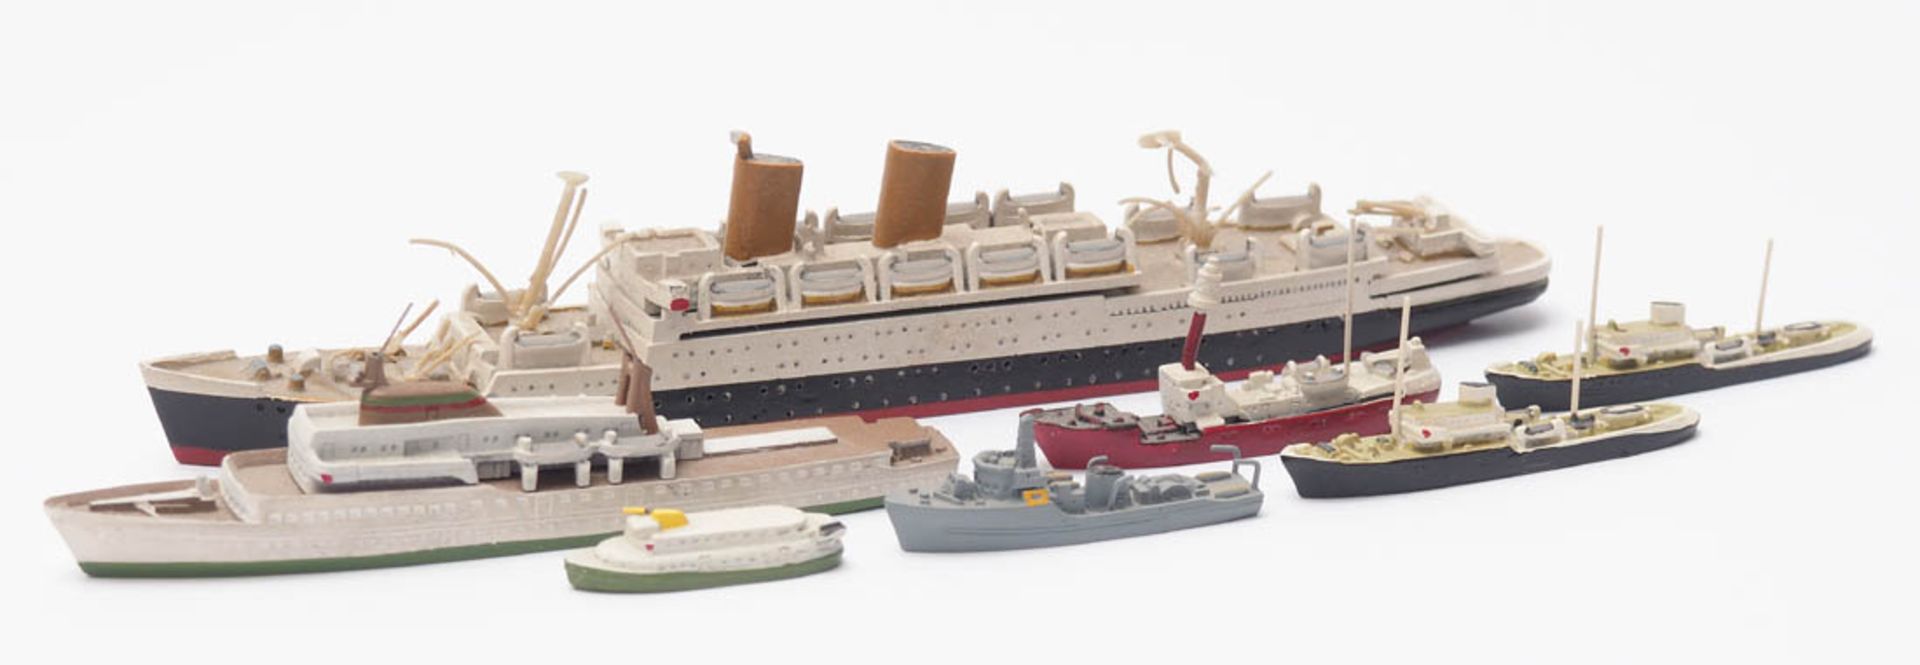 Sieben Schiffsmodelle Kriegs-, Handels- und Passagierschiffe. Druckguss. Unterschiedliche Größen.